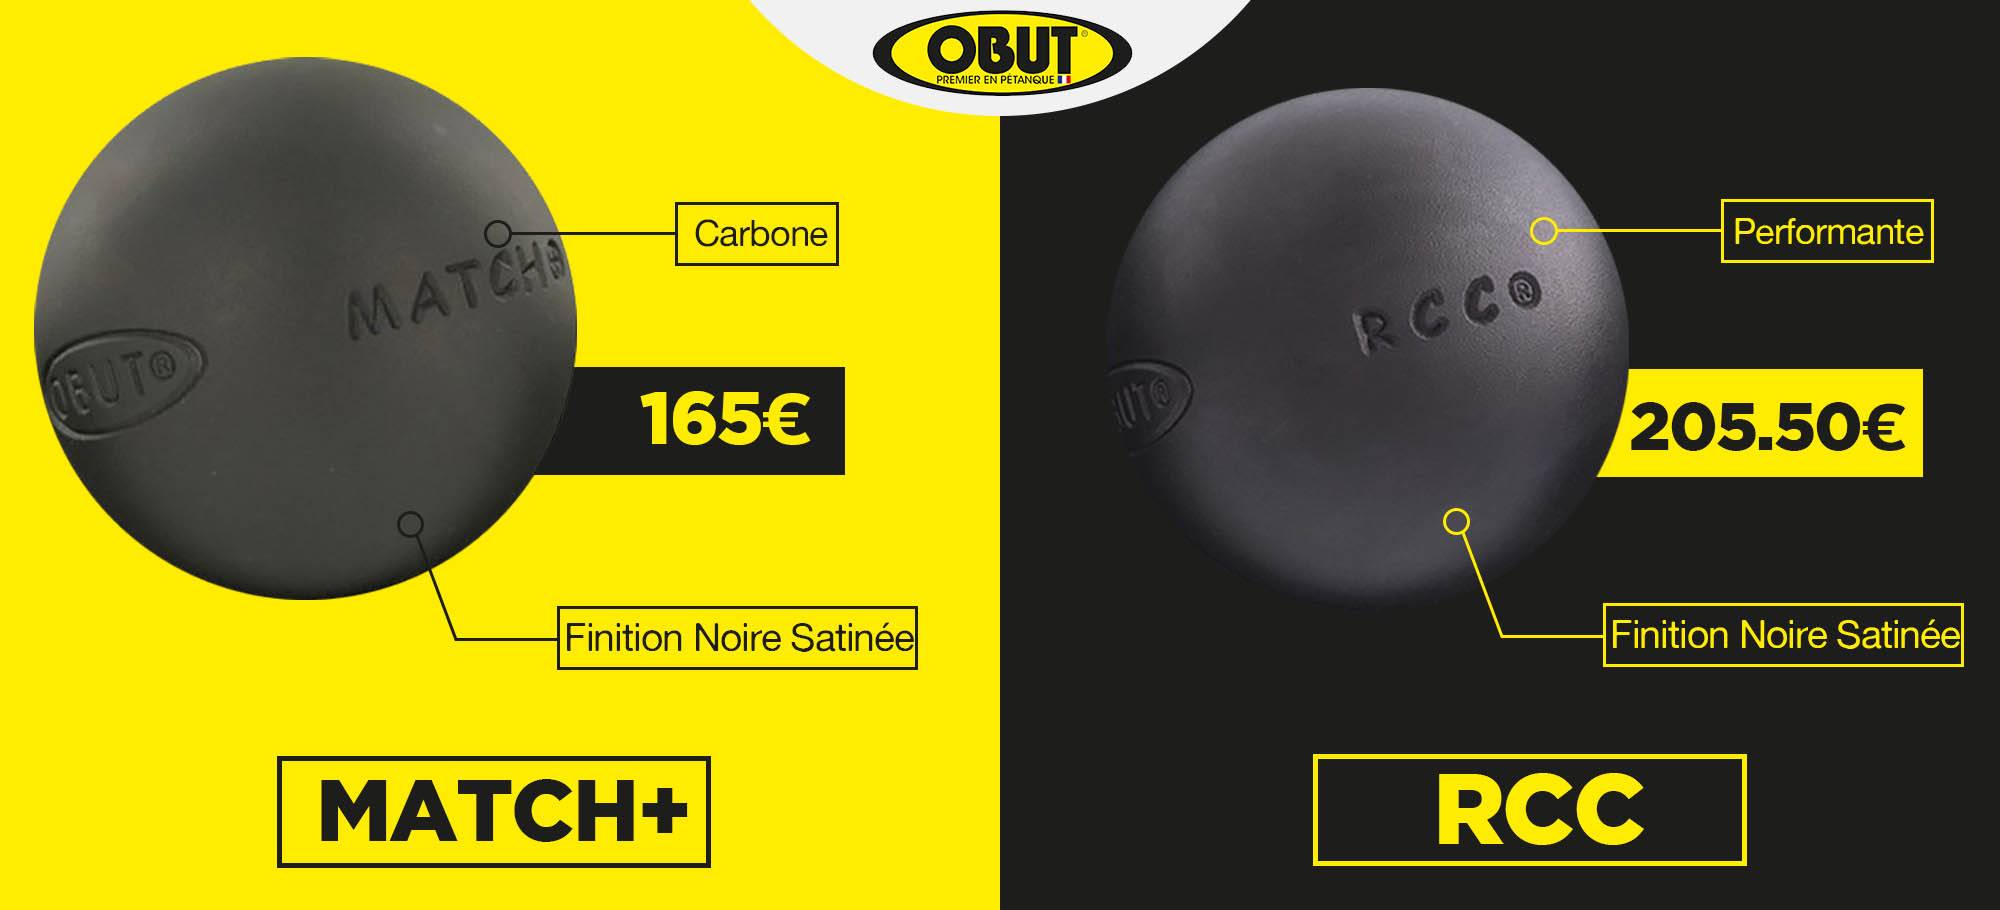 Lire la suite à propos de l’article Différences entre les boules Obut Match+ et RCC